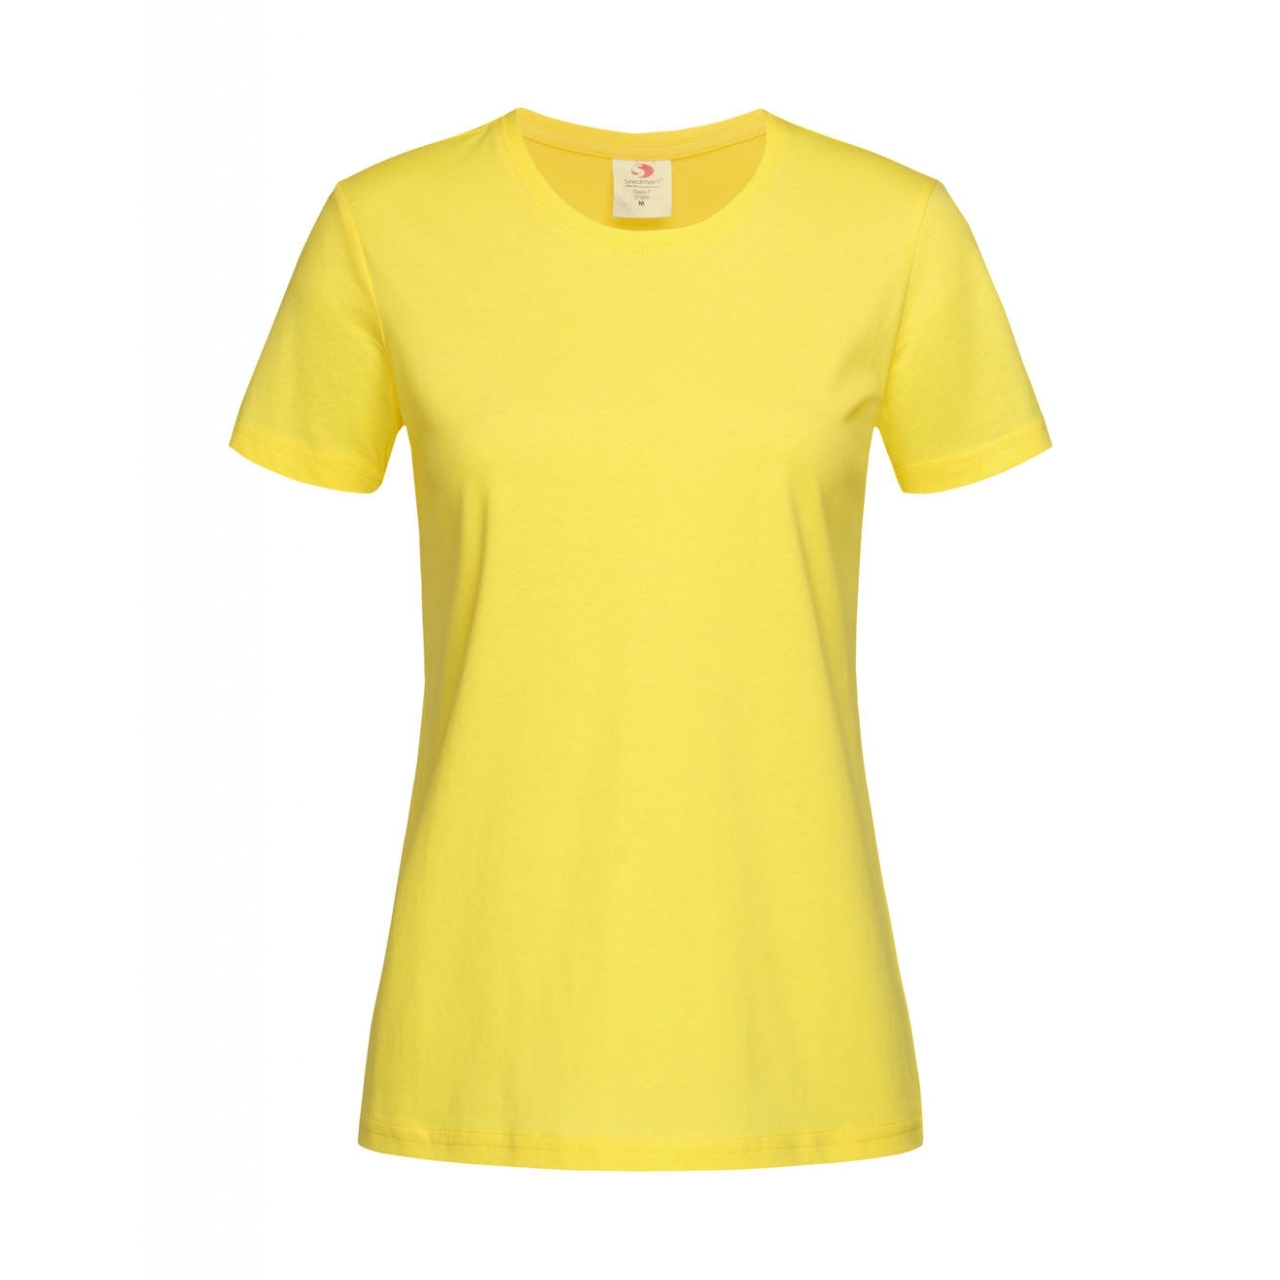 Tričko dámské Stedman Fitted s kulatým výstřihem - žluté, L